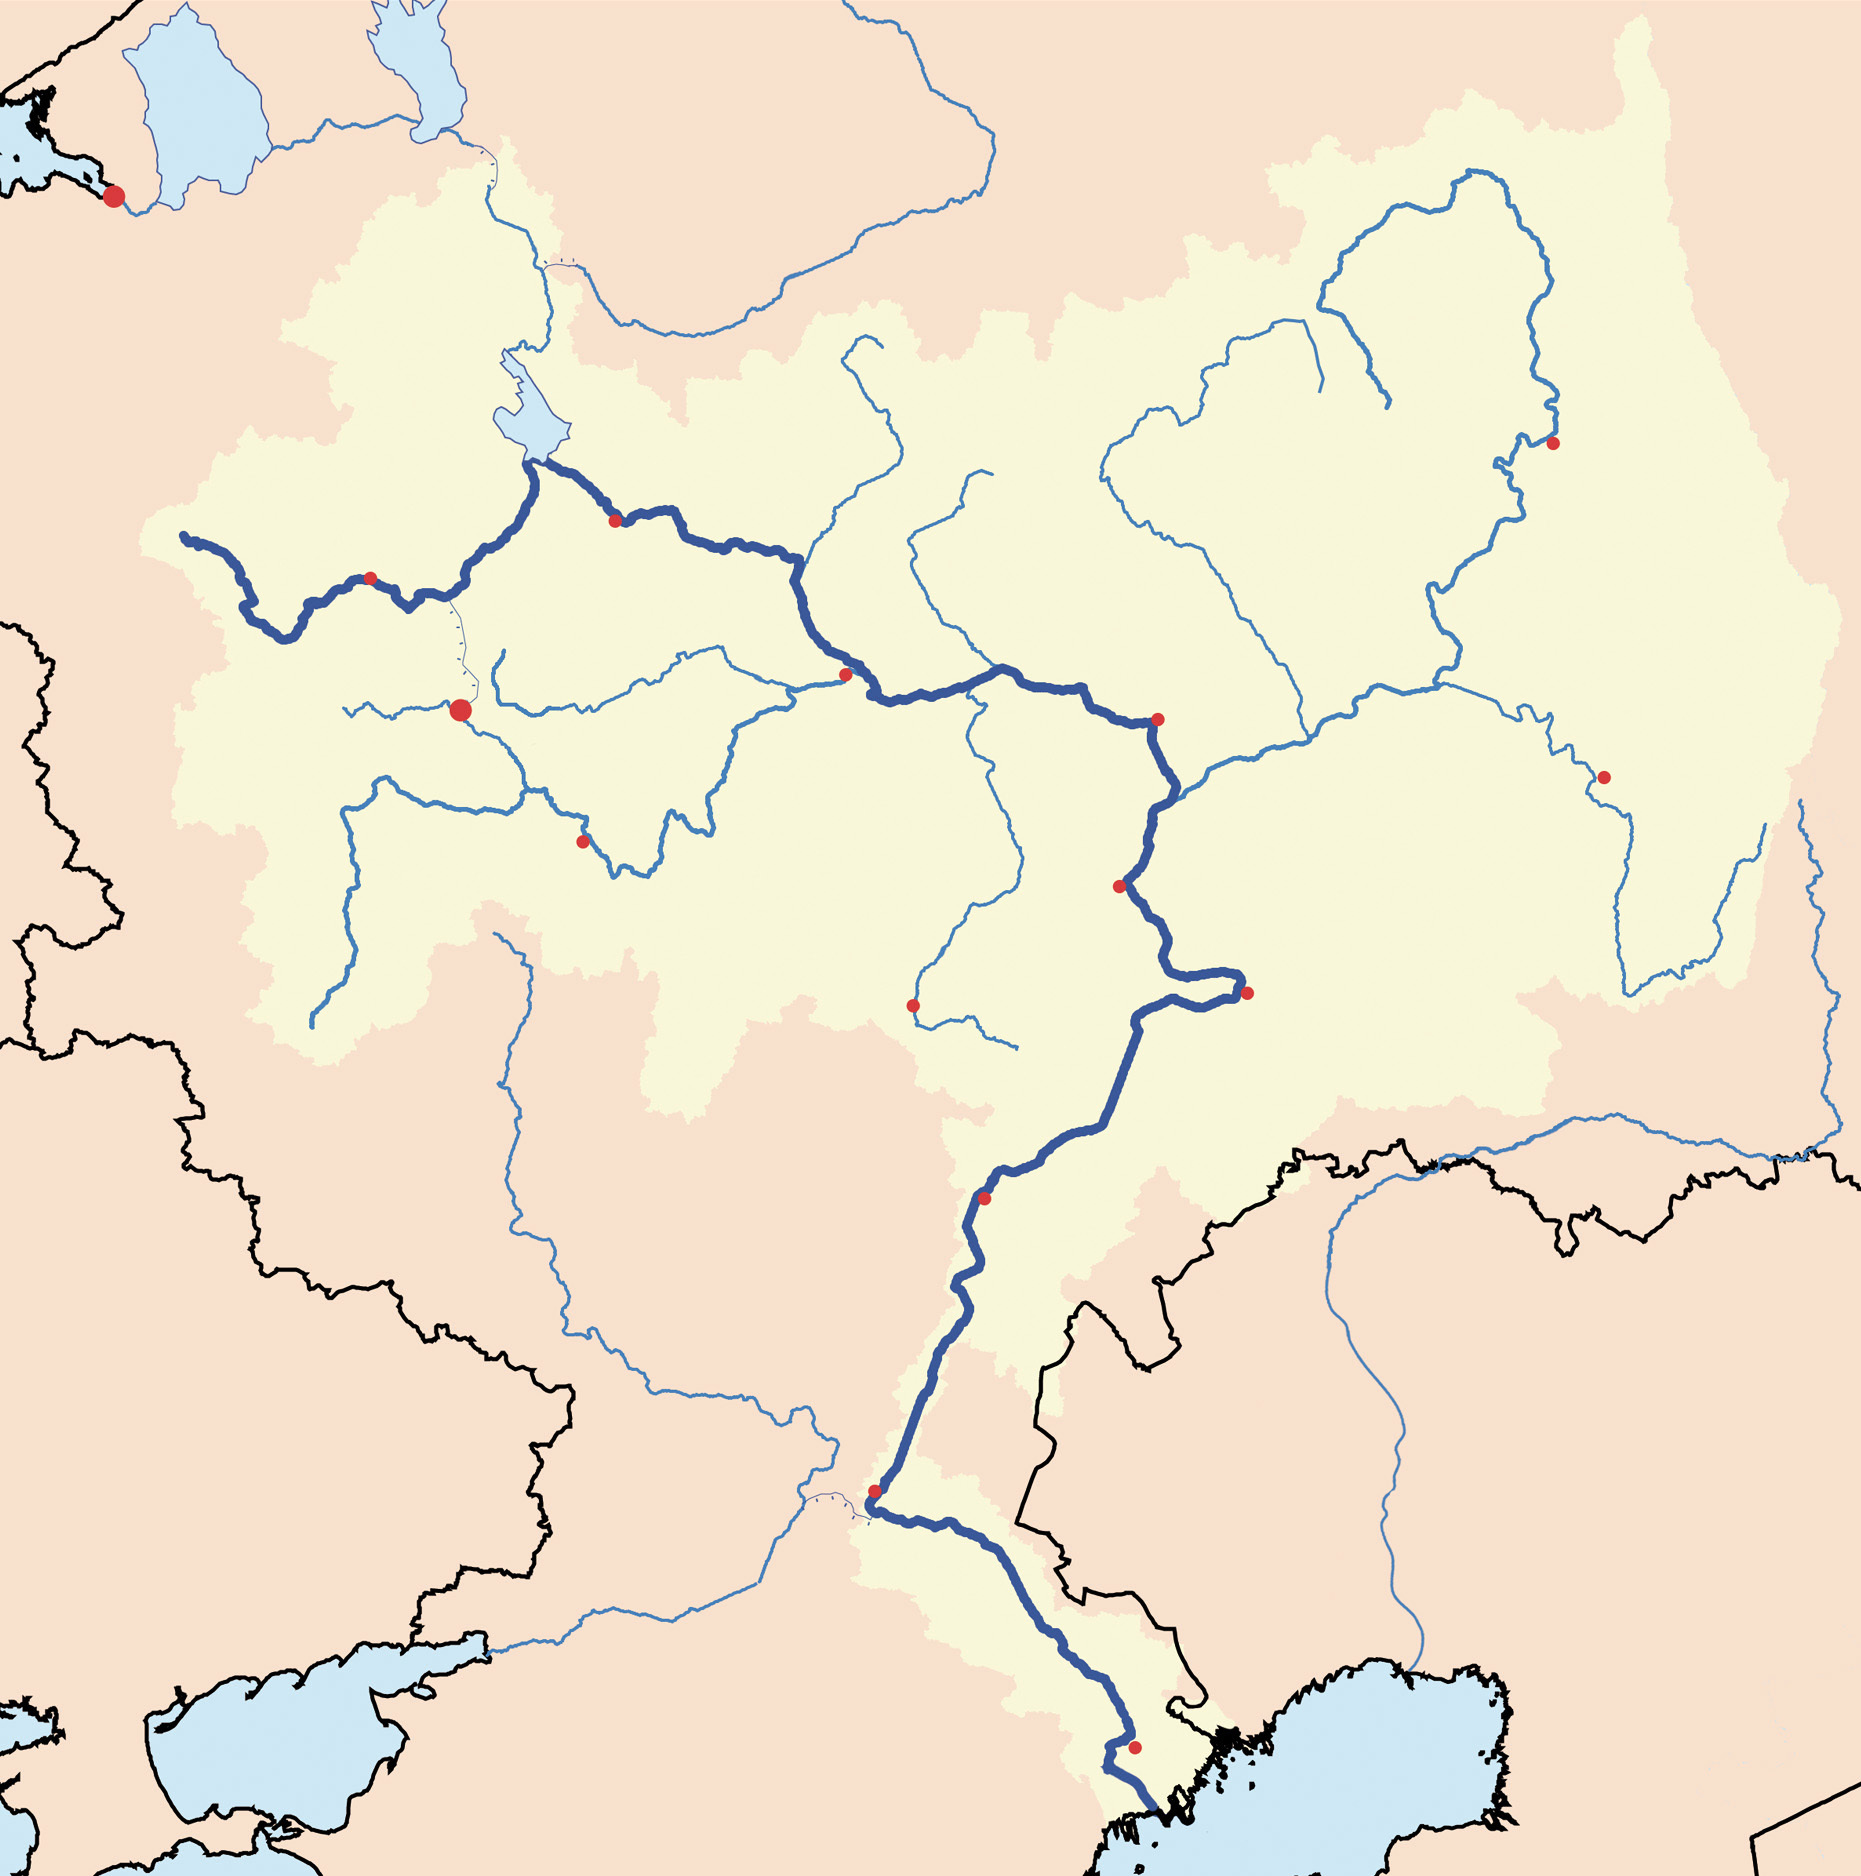 伏尔加河就是一条曲折却跨度颇大的河流第二,南北走向的河流纬度跨越